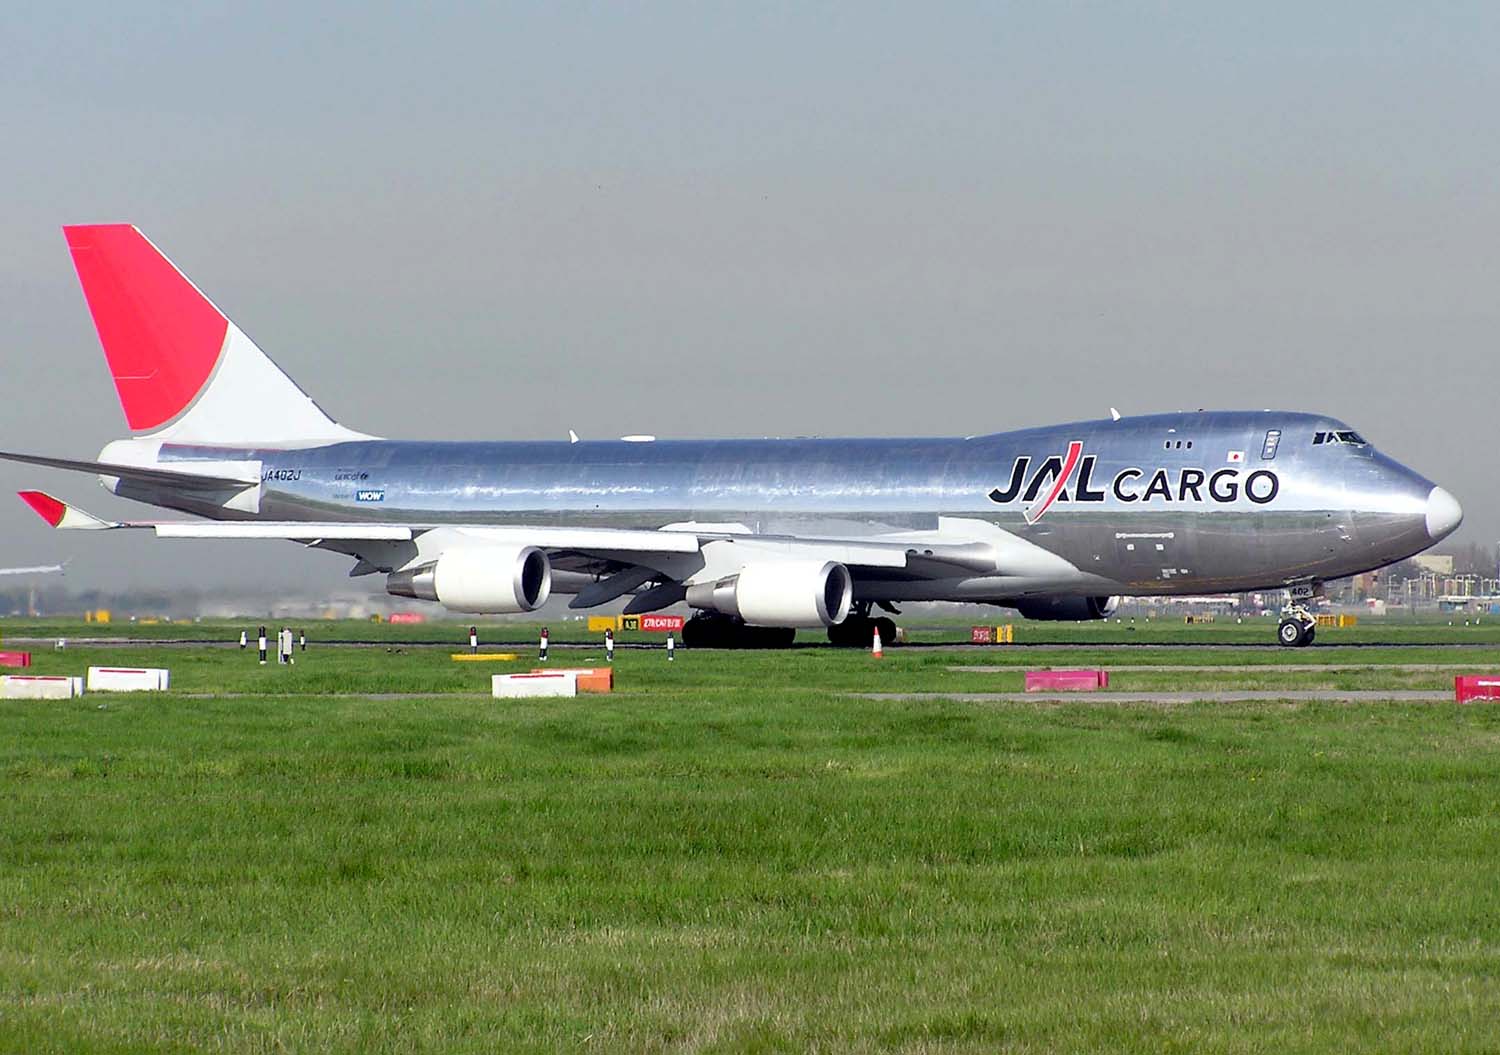 ファイル:JAL Cargo B747-446F (JA402J) taxiing at London Heathrow 